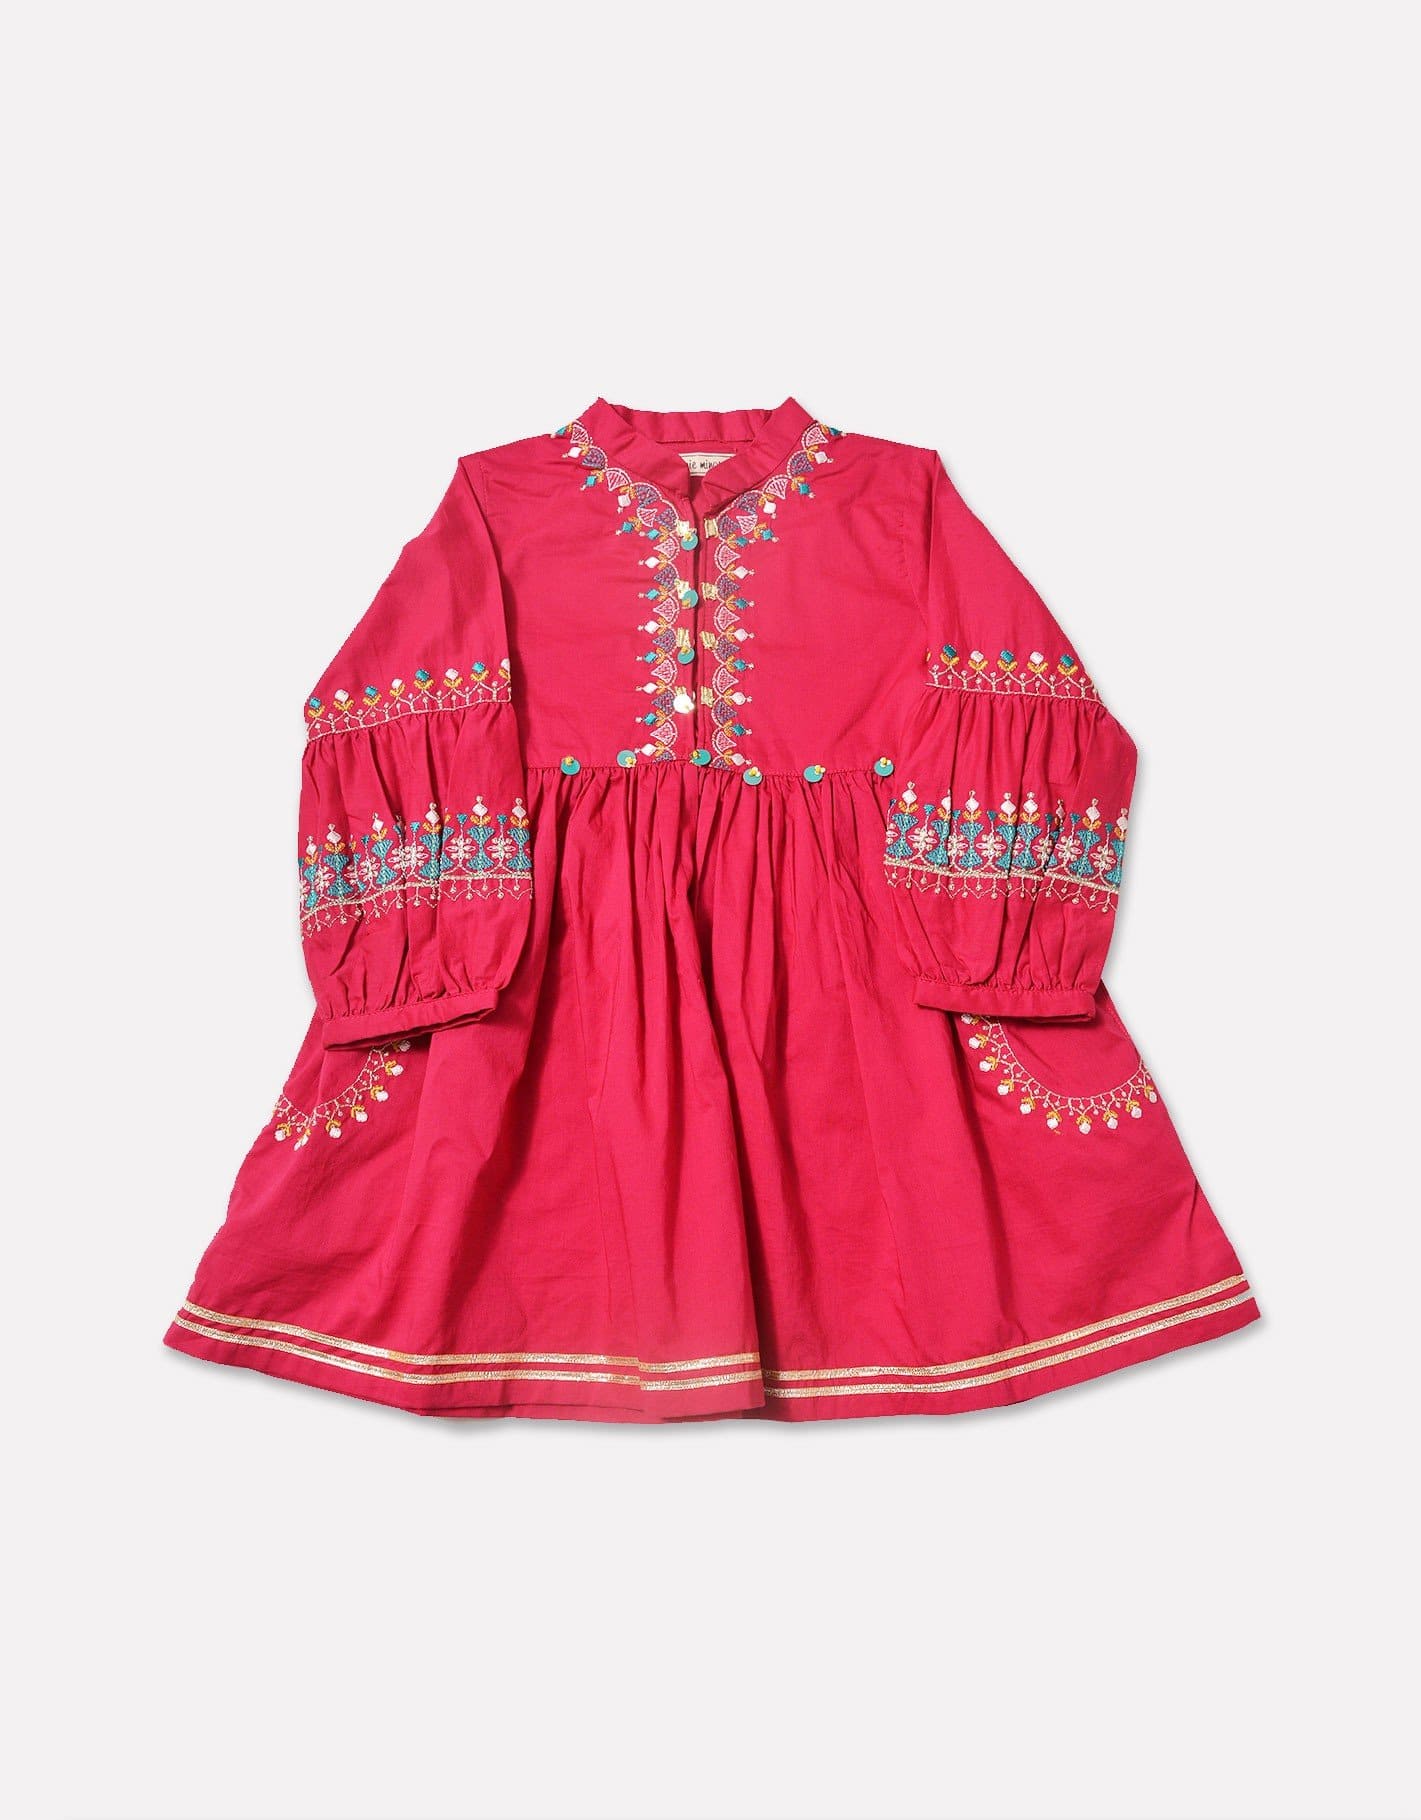 dresses-for-girls-online-shopping-in-pakistan